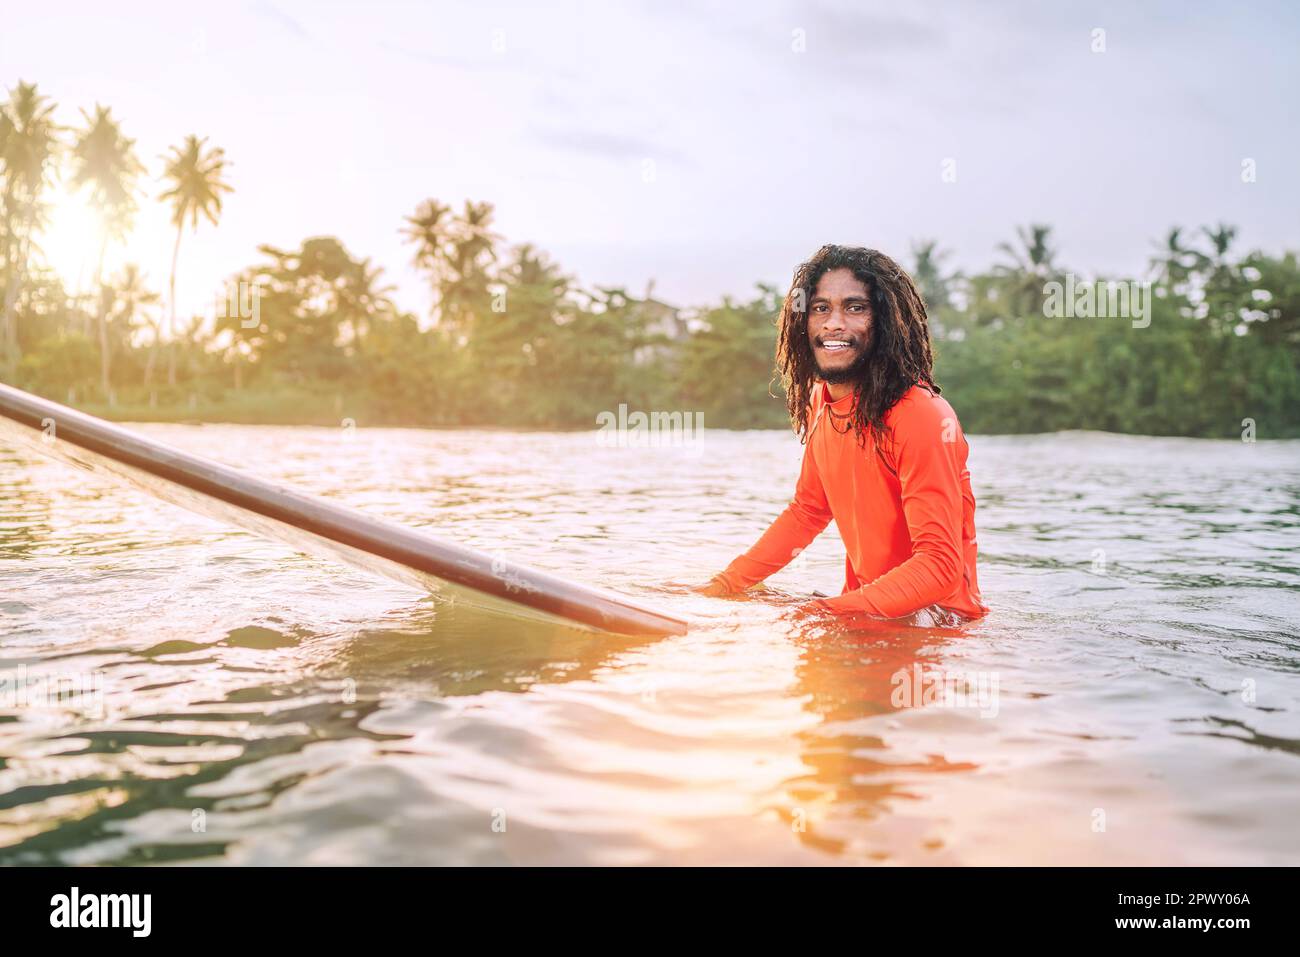 Schwarzer langhaariger Teenager-Mann, der auf einem langen Surfbrett schwimmt und auf eine Welle wartet, die zum Surfen bereit ist, mit Palmenhain-Sonnenstrahlen. Extreme Wassersportarten o Stockfoto